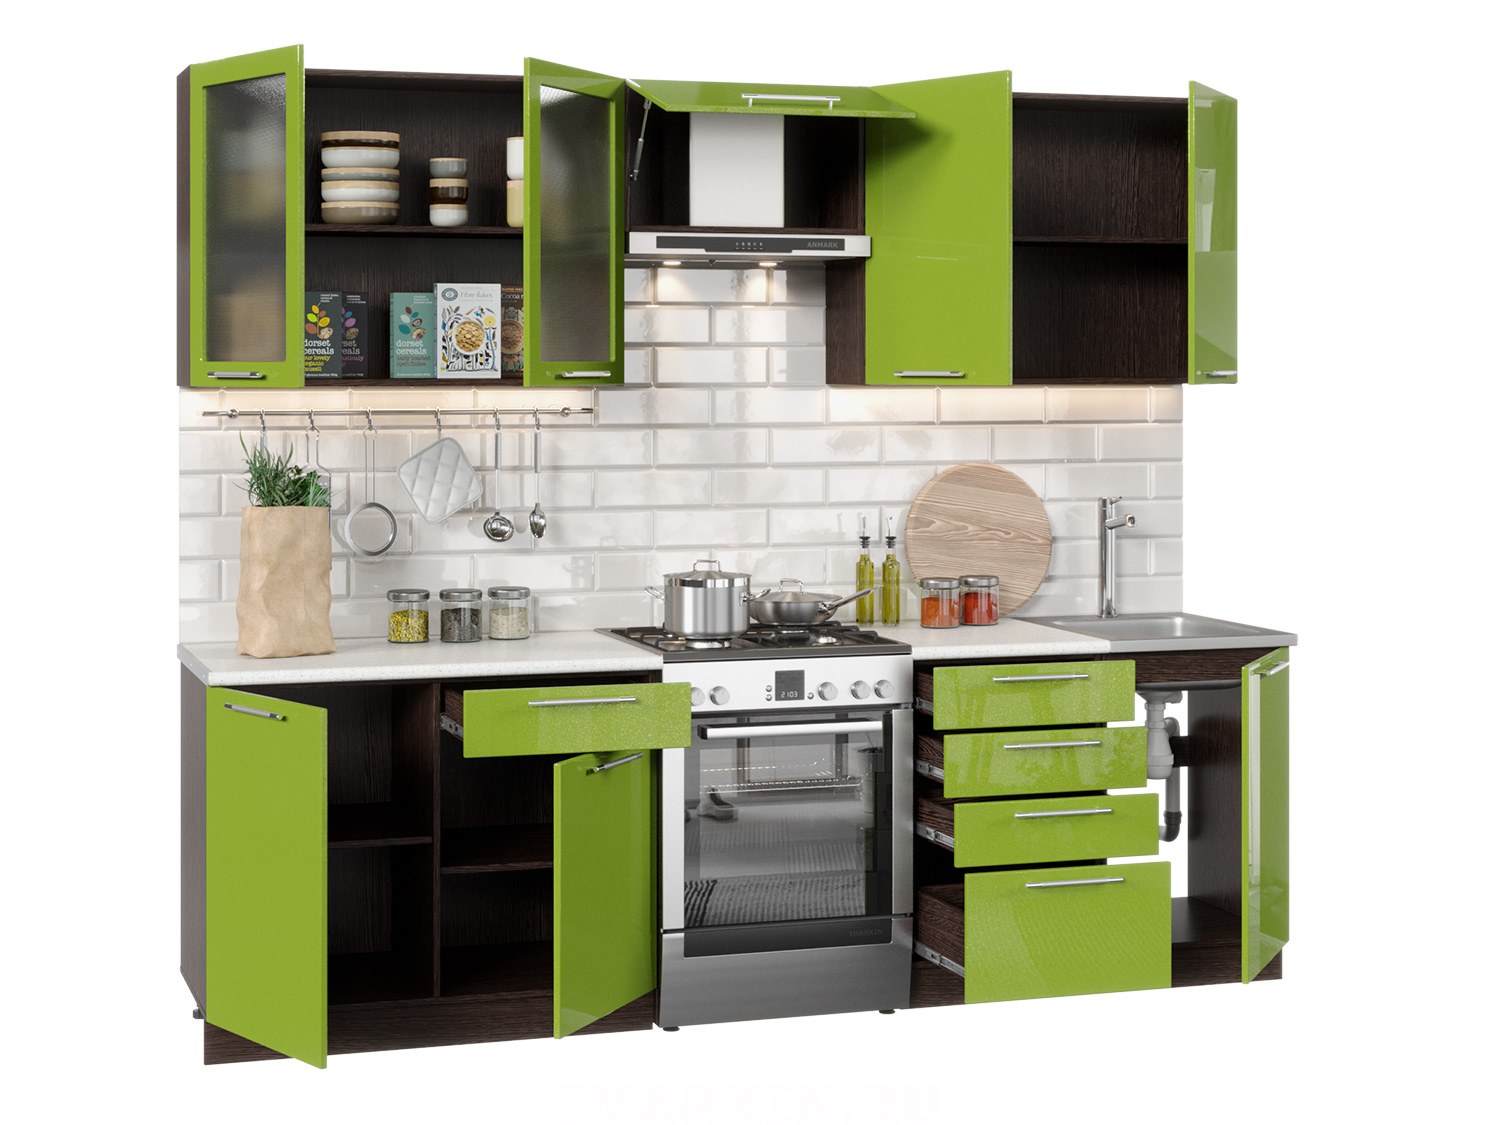 Кухня олива 2.0 зеленый венге. Интерьер центр кухни. Сайт фран